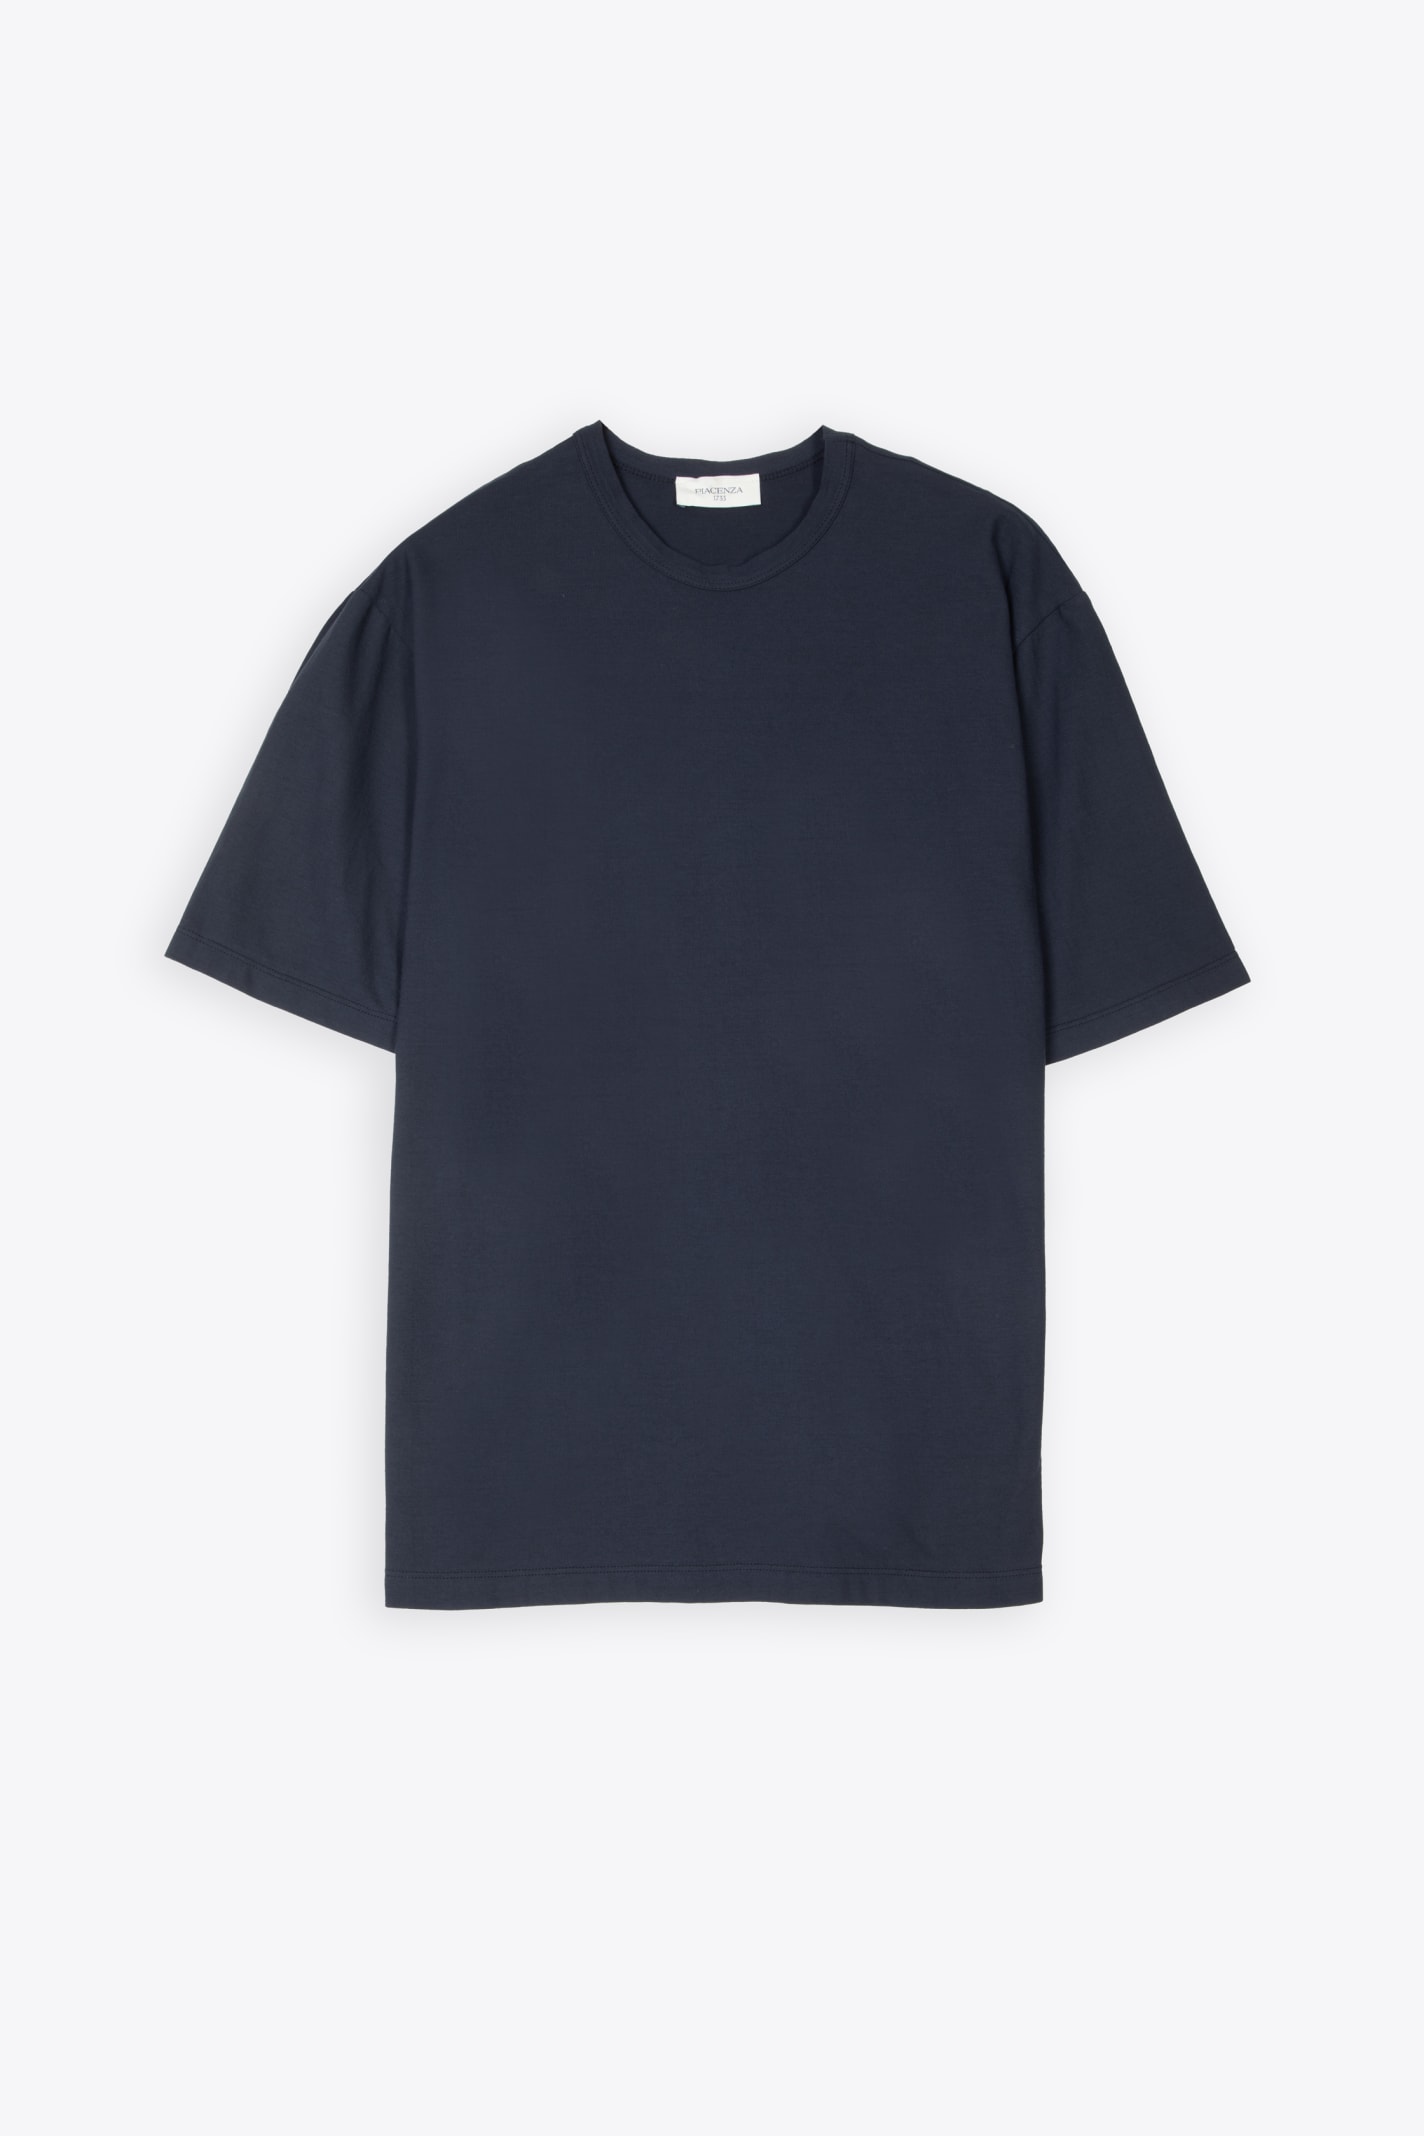 T-shirt Dark blue lightweight cotton t-shirt